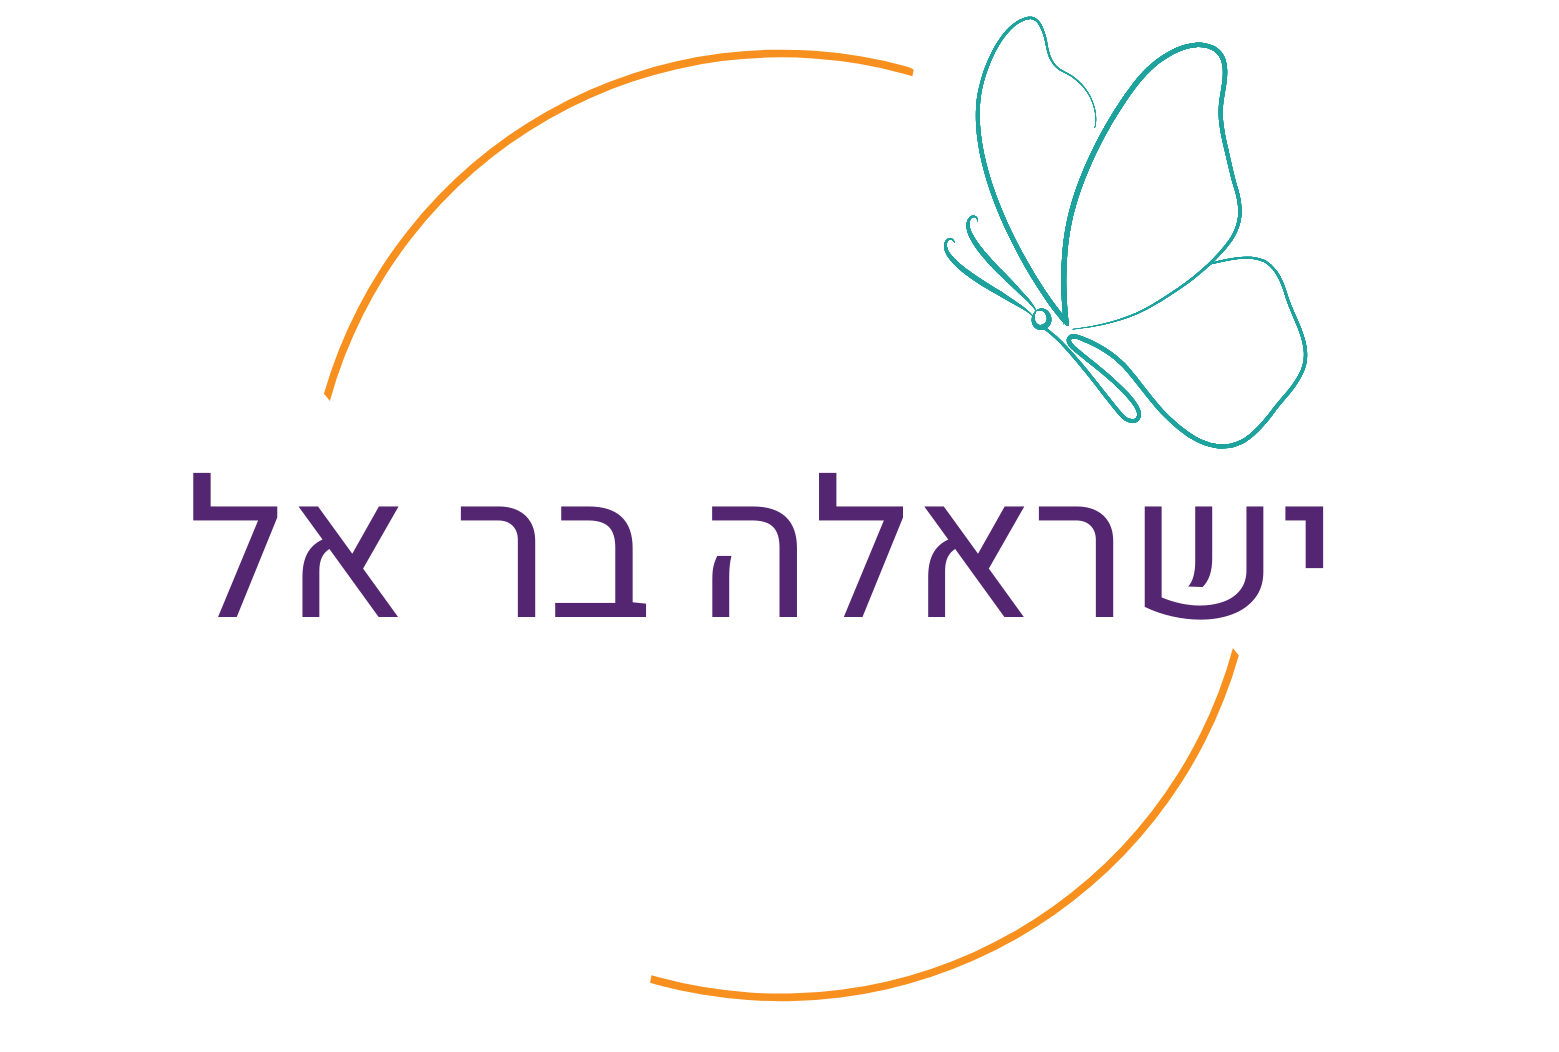 לוגו שרשום בו השם ישראלה בר אל ויש ציור של פרפר טורכיז ומעגל כתום